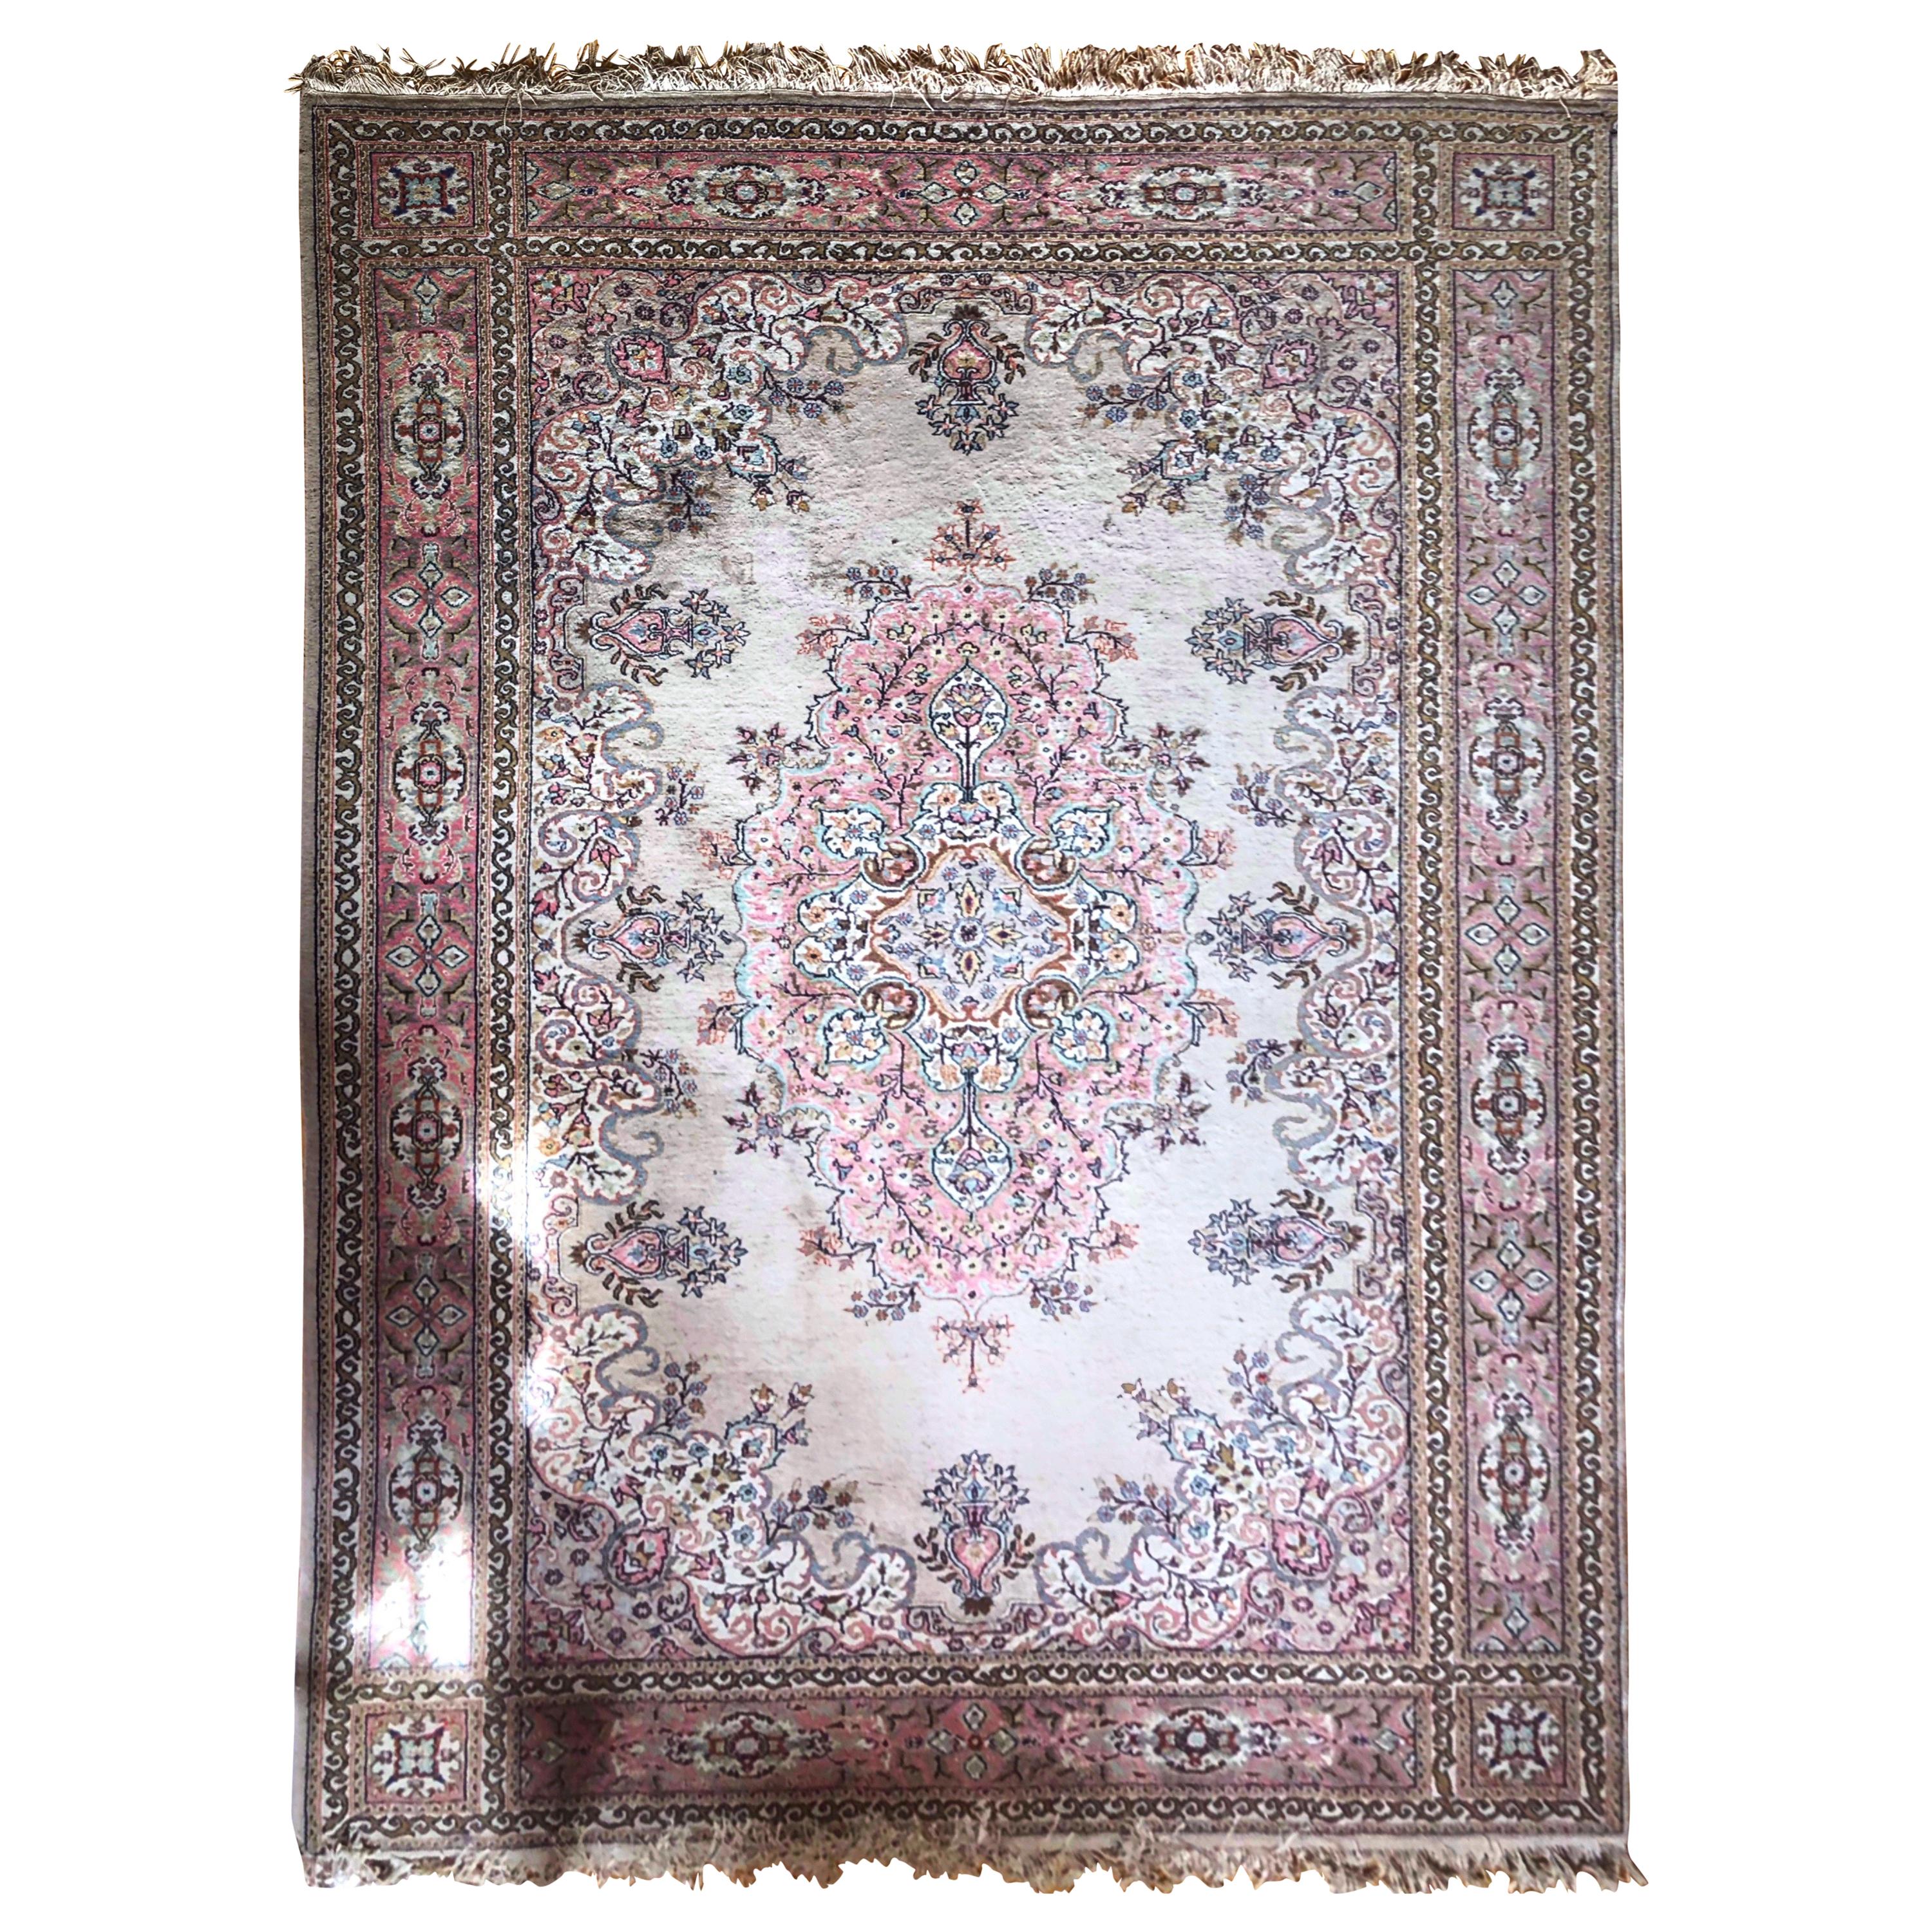 Turkish Large Carpet Kilim Pink Blue Floral Motives Elegant Asian Design SALE 